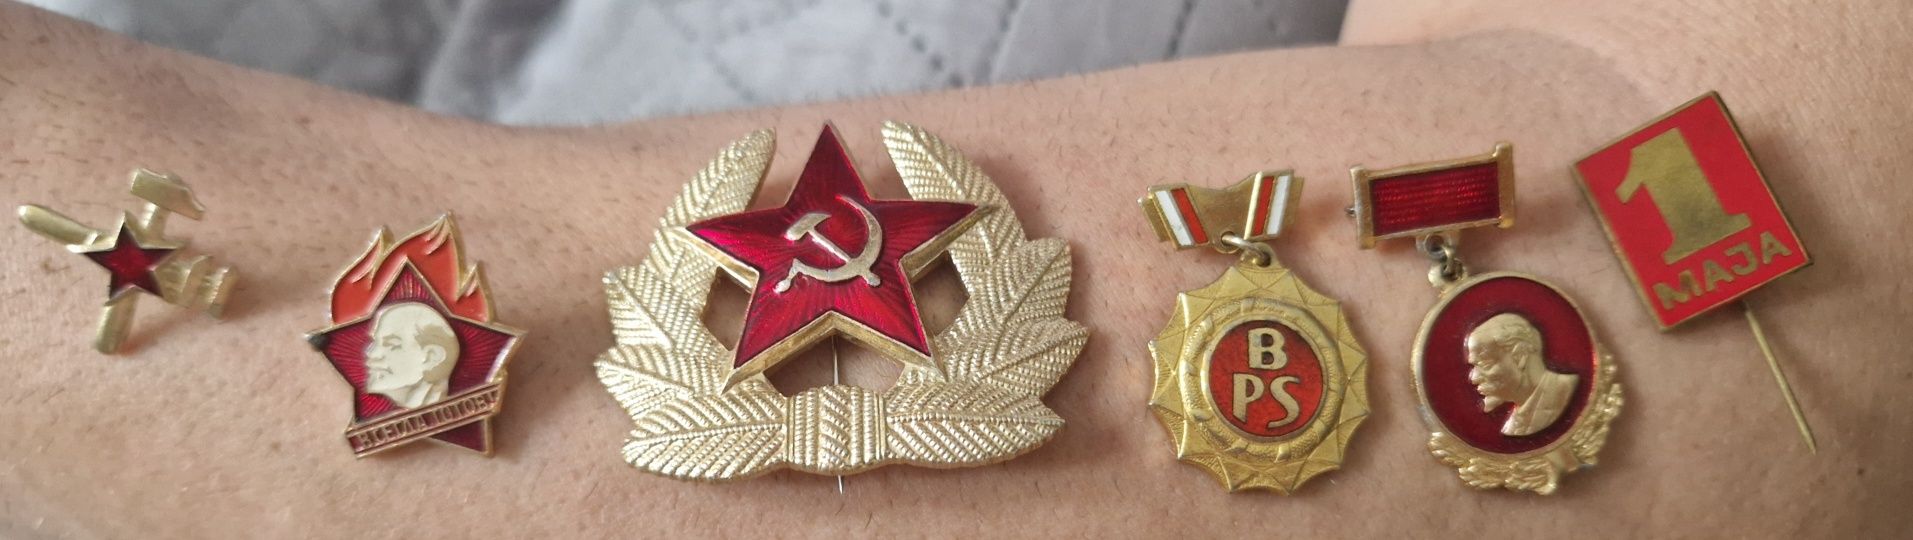 Odznaki przypinki sowieckie ZSRR zestaw